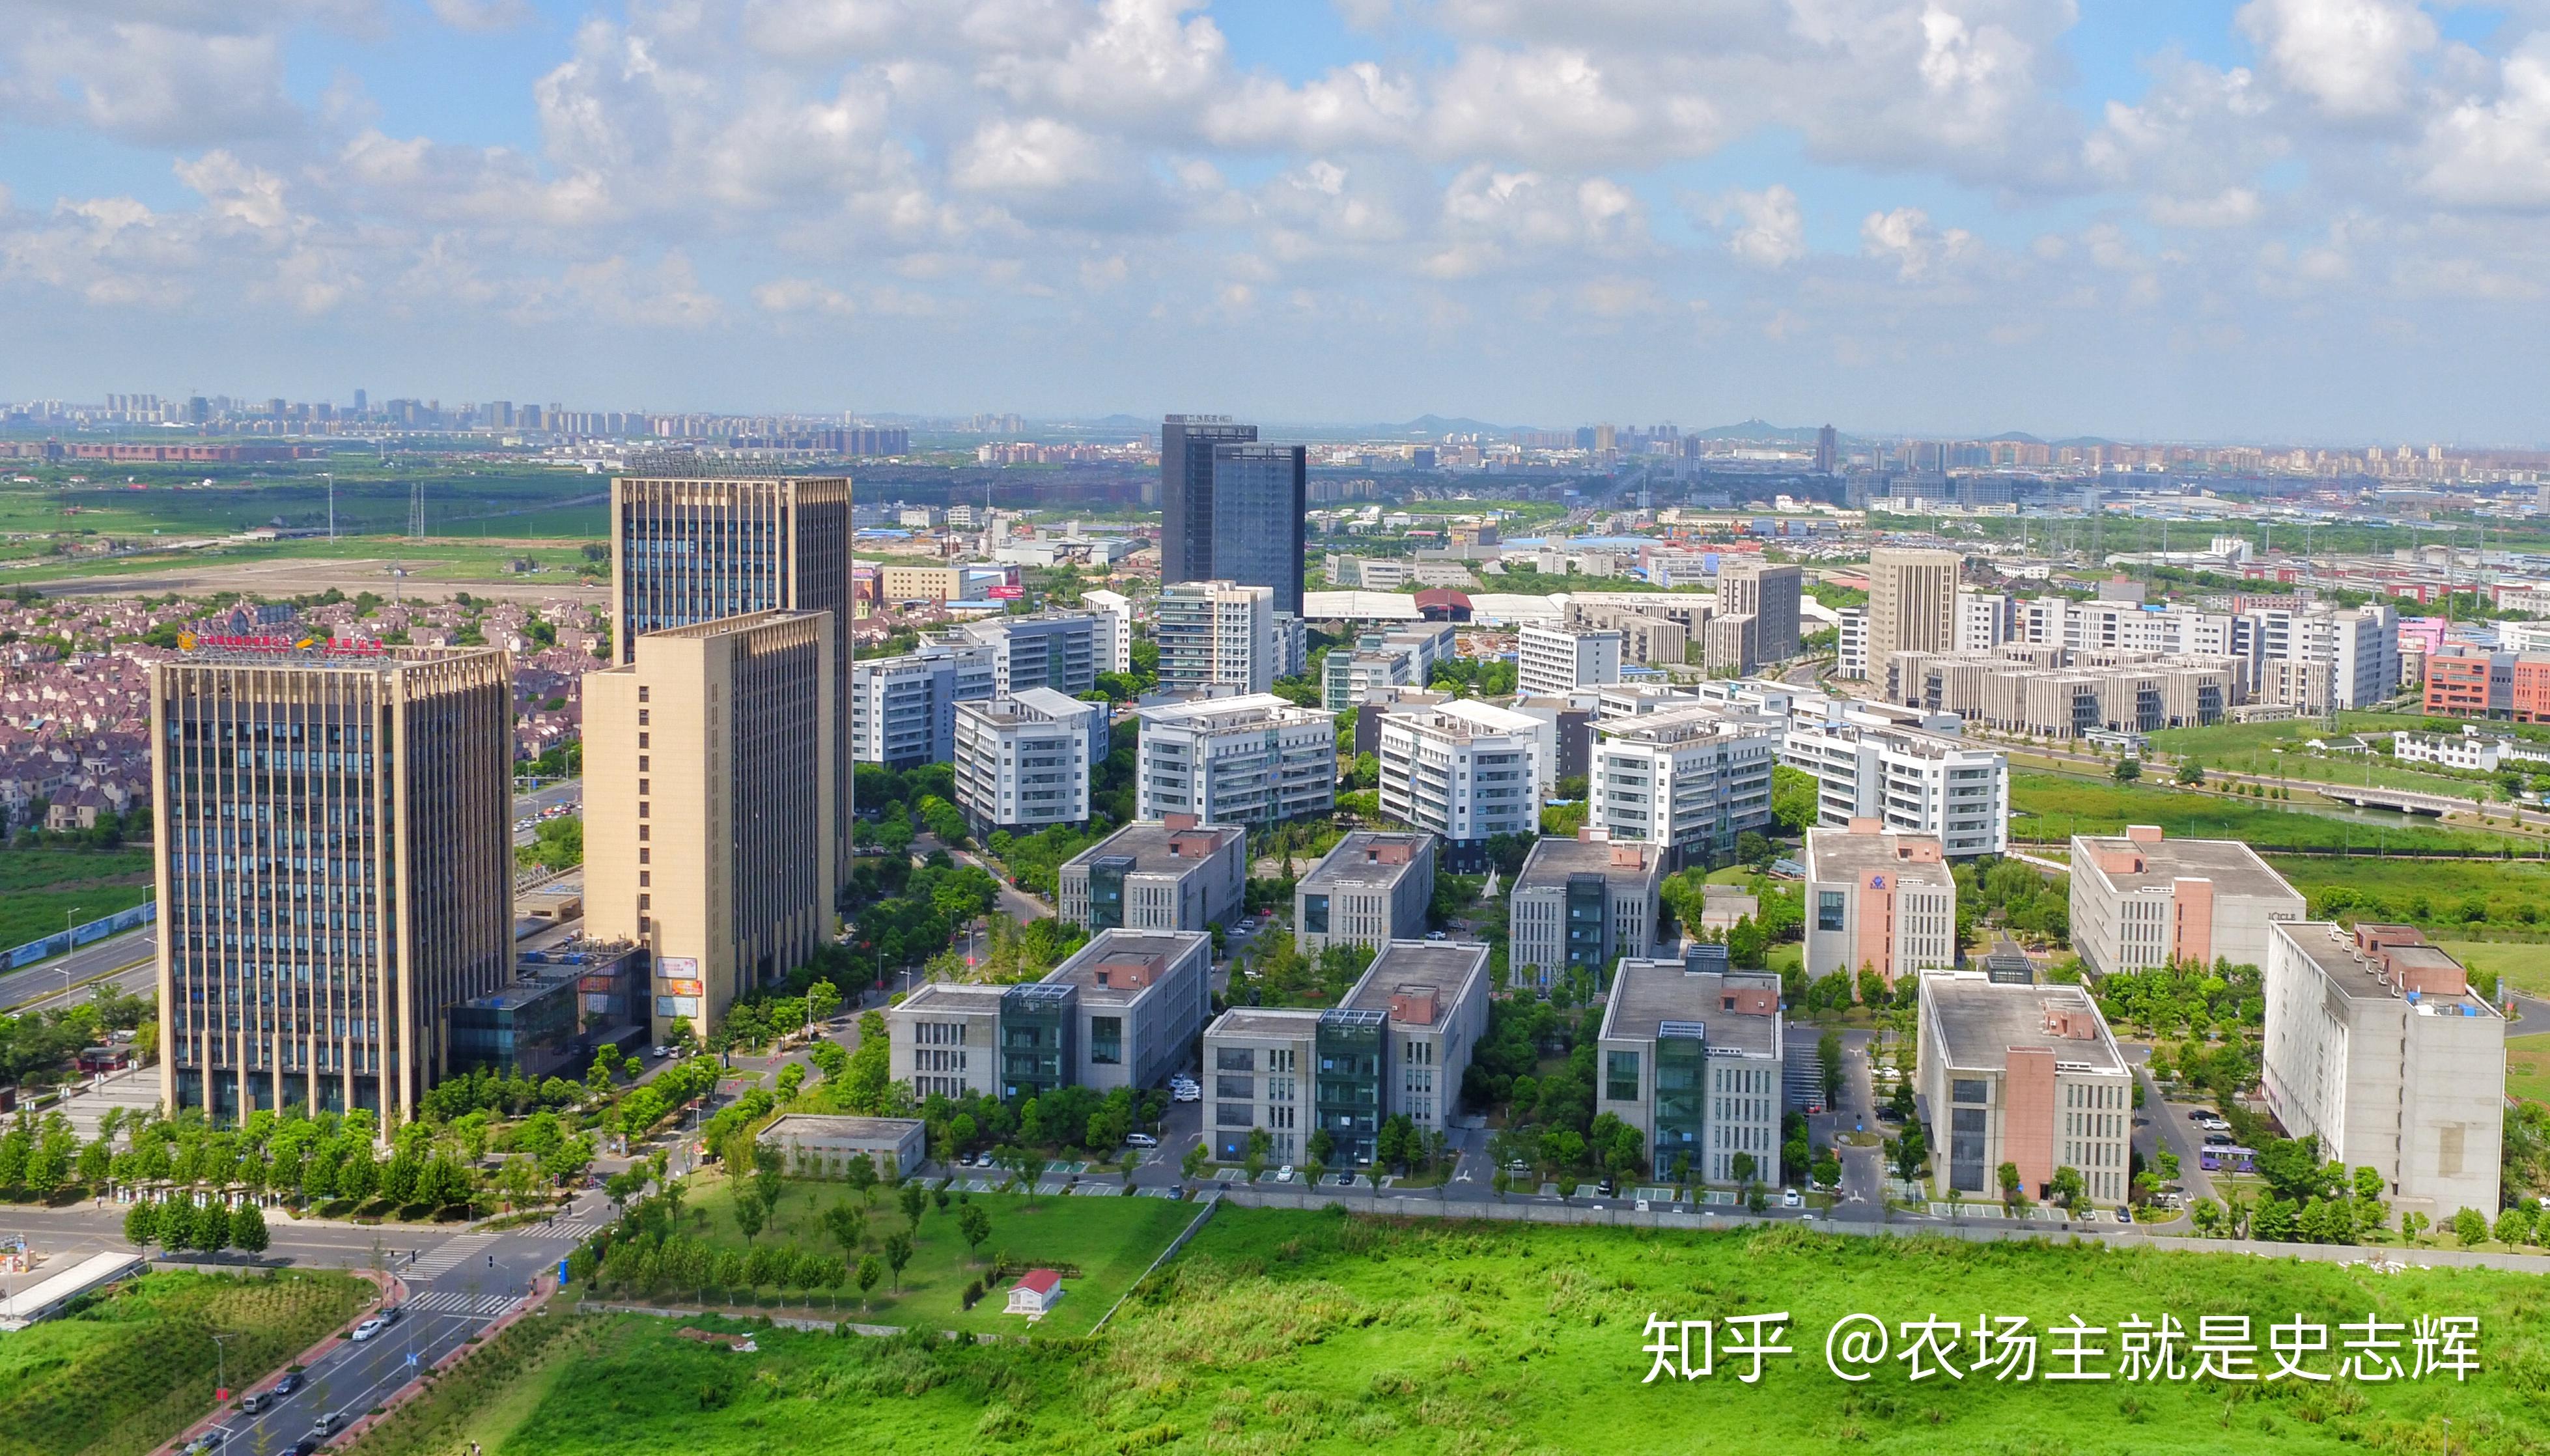 一张图带您认识一个全新松江新城,视频+详情图解 G60上海科创走廊 - 知乎